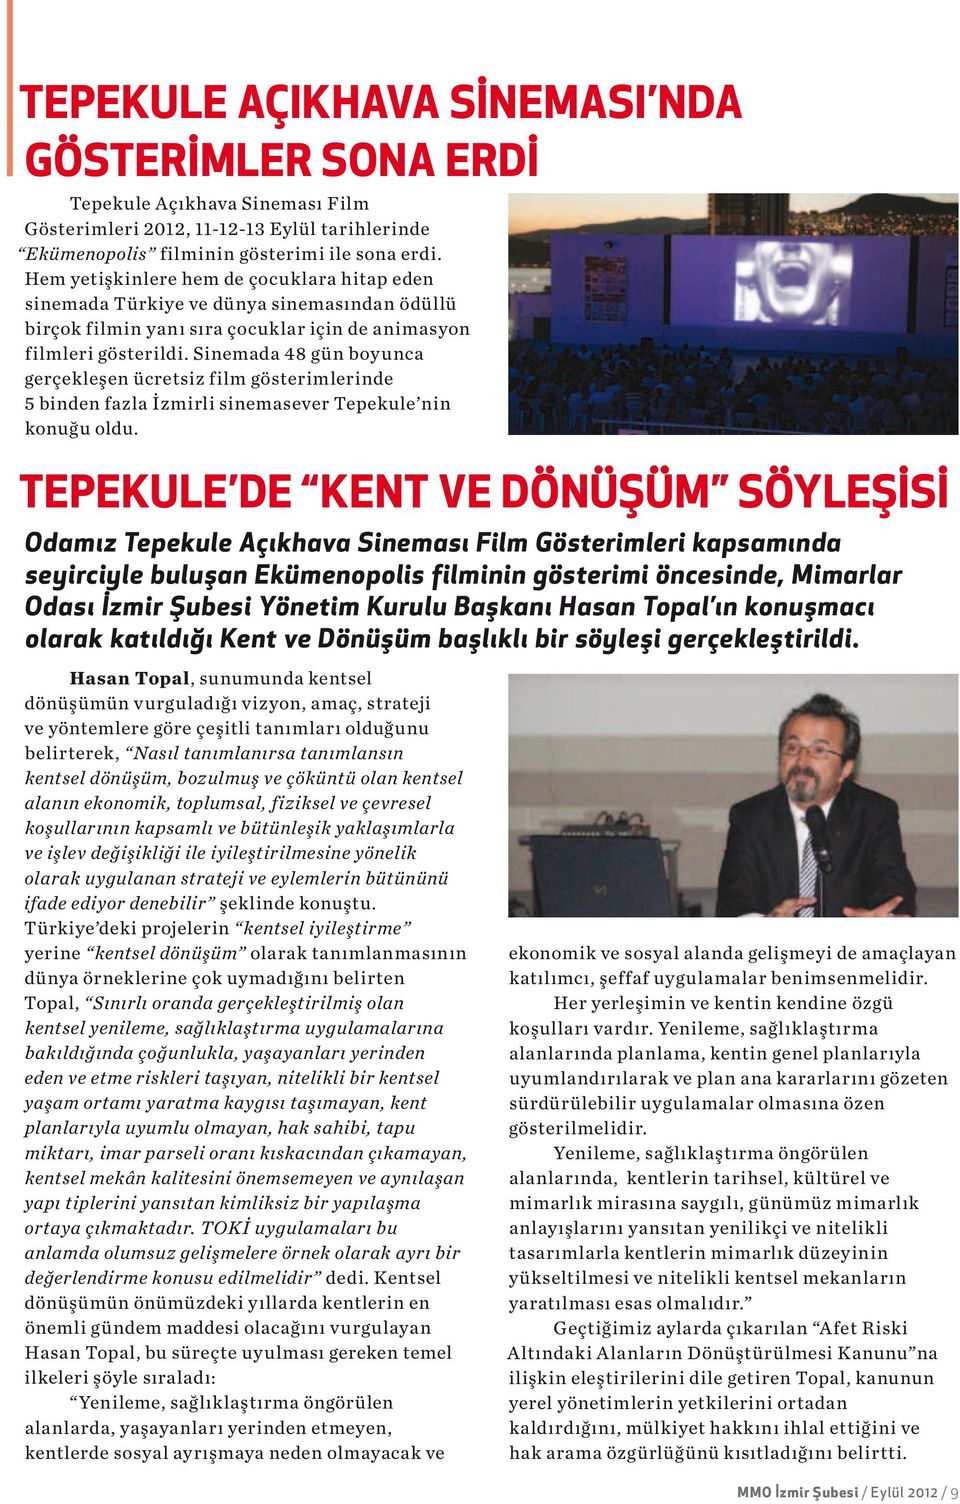 Sinemada 48 gün boyunca gerçekleşen ücretsiz film gösterimlerinde 5 binden fazla İzmirli sinemasever Tepekule nin konuğu oldu.